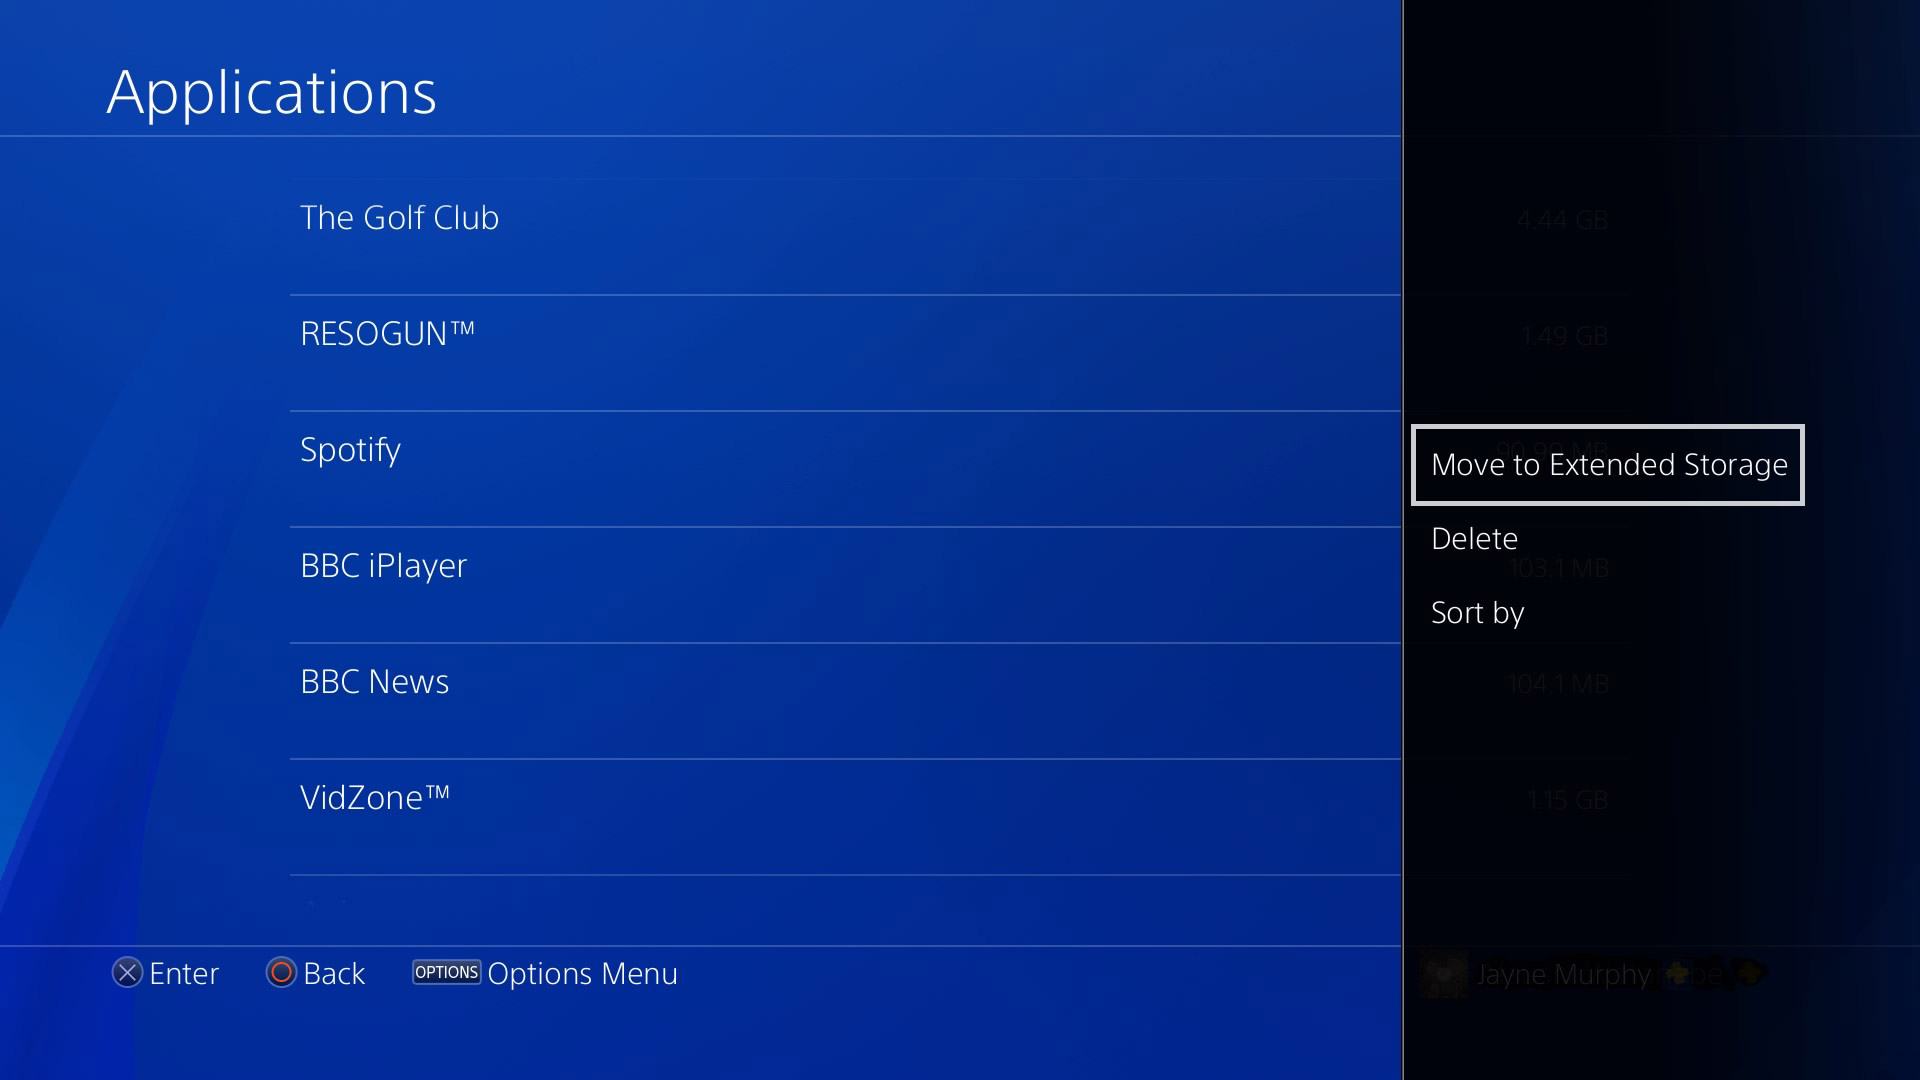 PS4 Update 4.50 External HDD